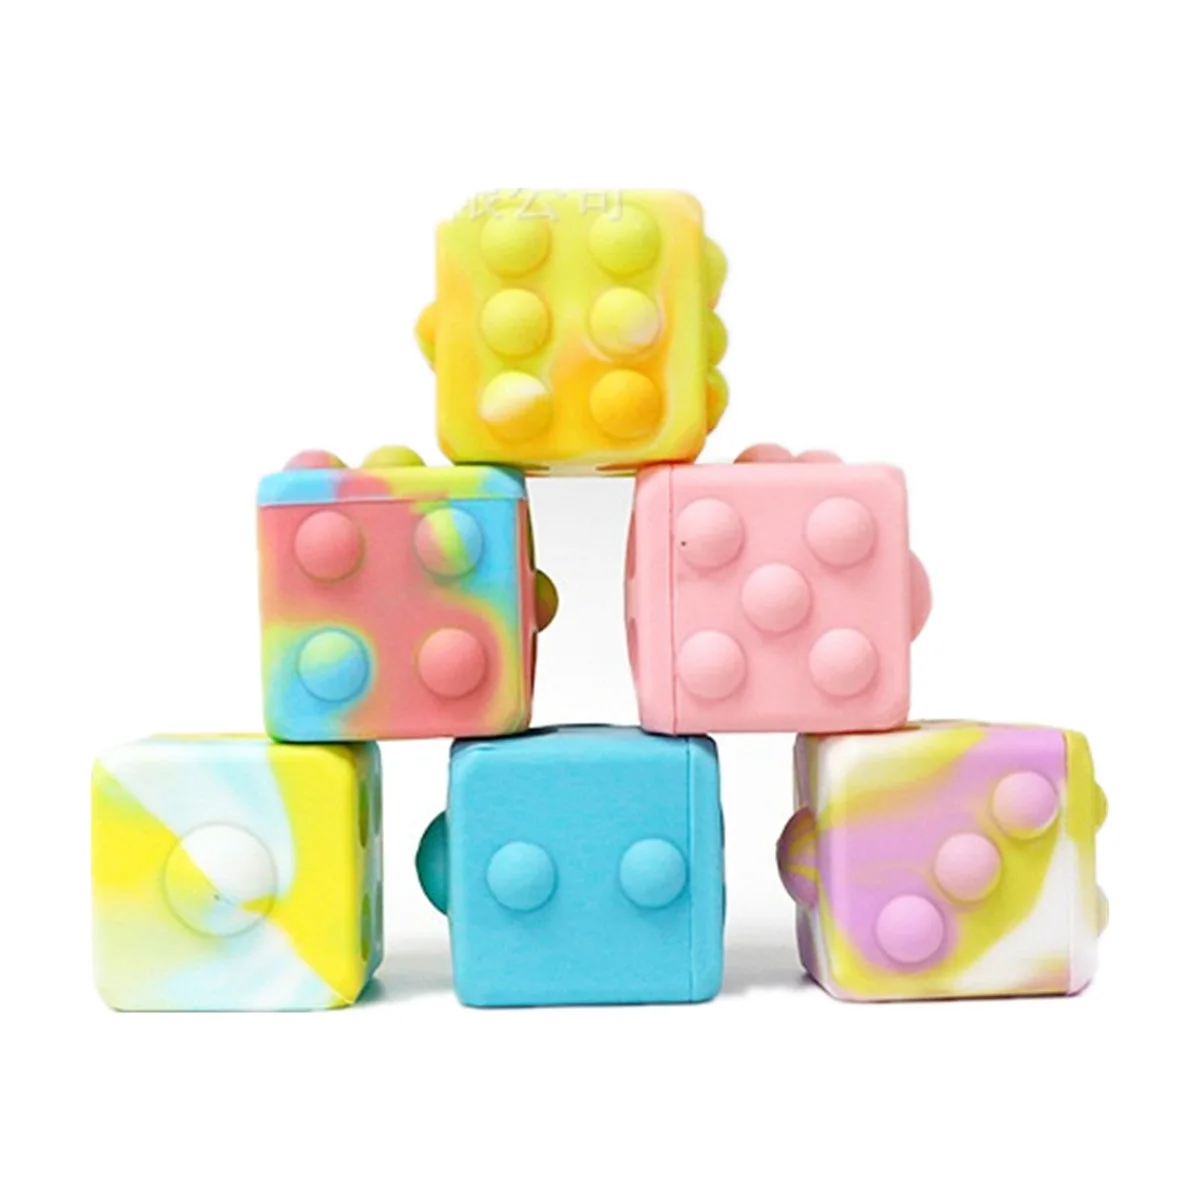 

Factory Rainbow 3D Squishy Stress Relief Fidget Toys Sensory Squeeze Push Bubble Popper Pop Fidget Cube Decompression Ball